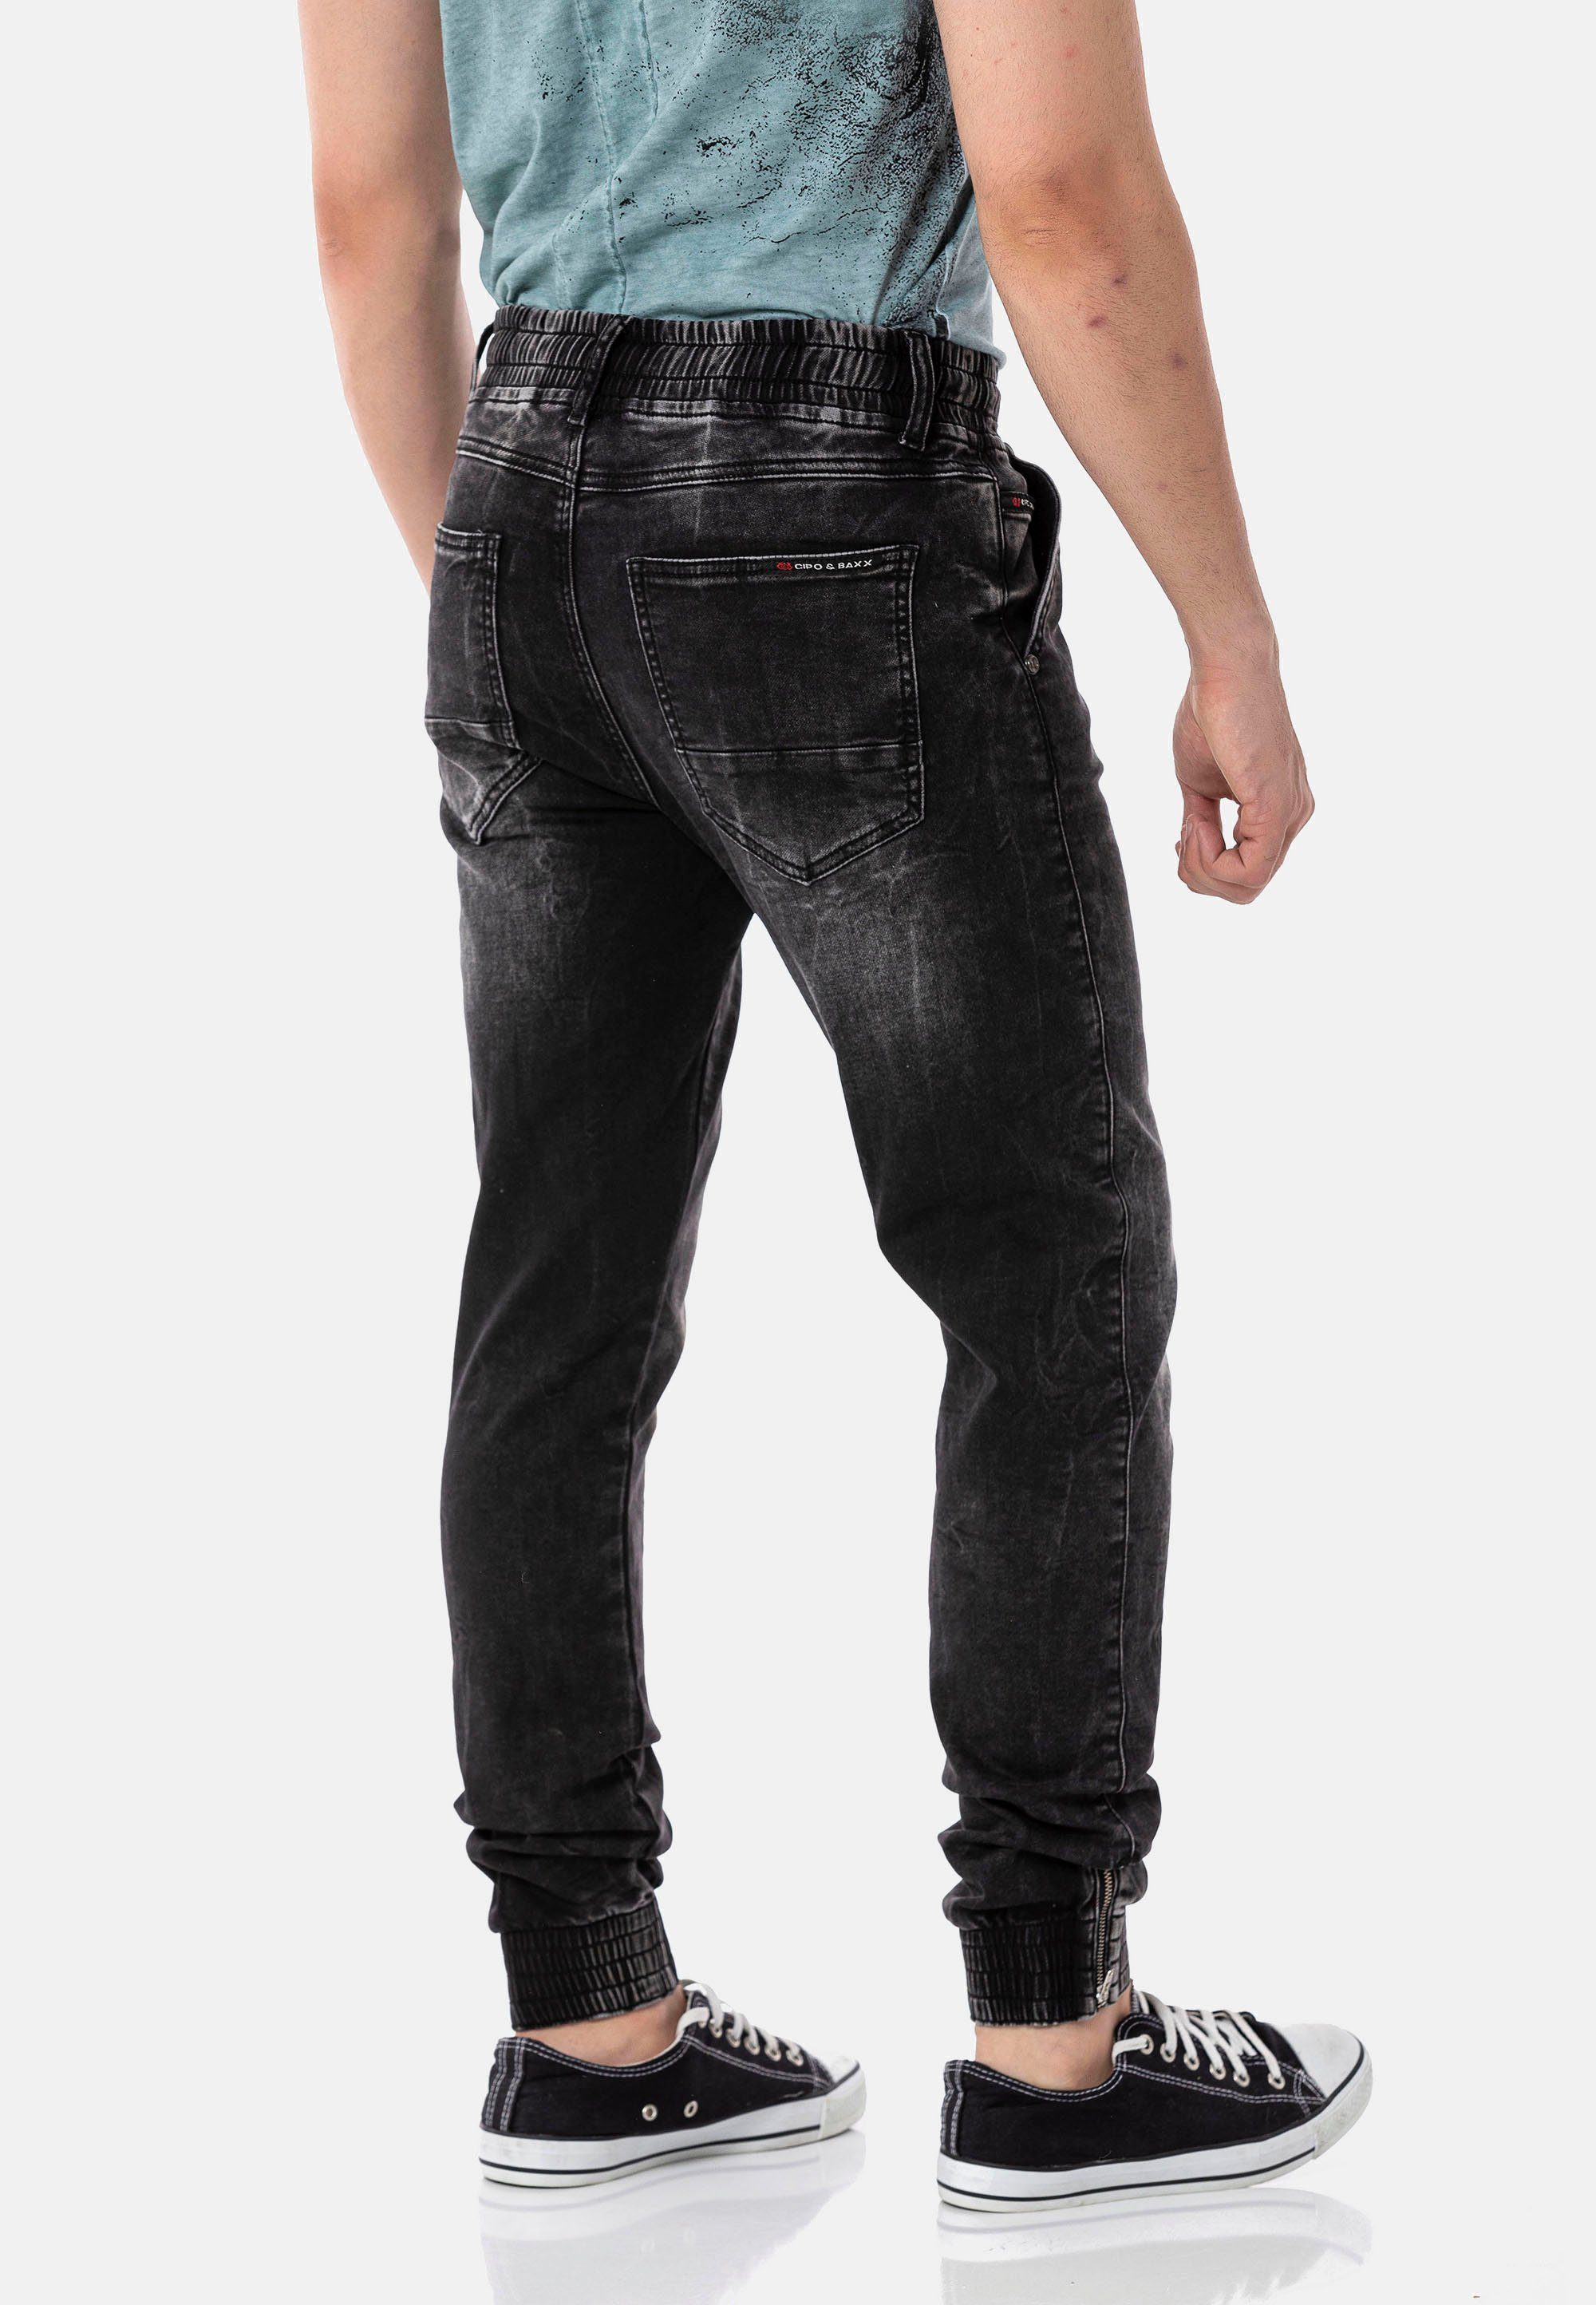 Dehnbund mit Bequeme komfortablem schwarz Baxx Cipo Jeans &